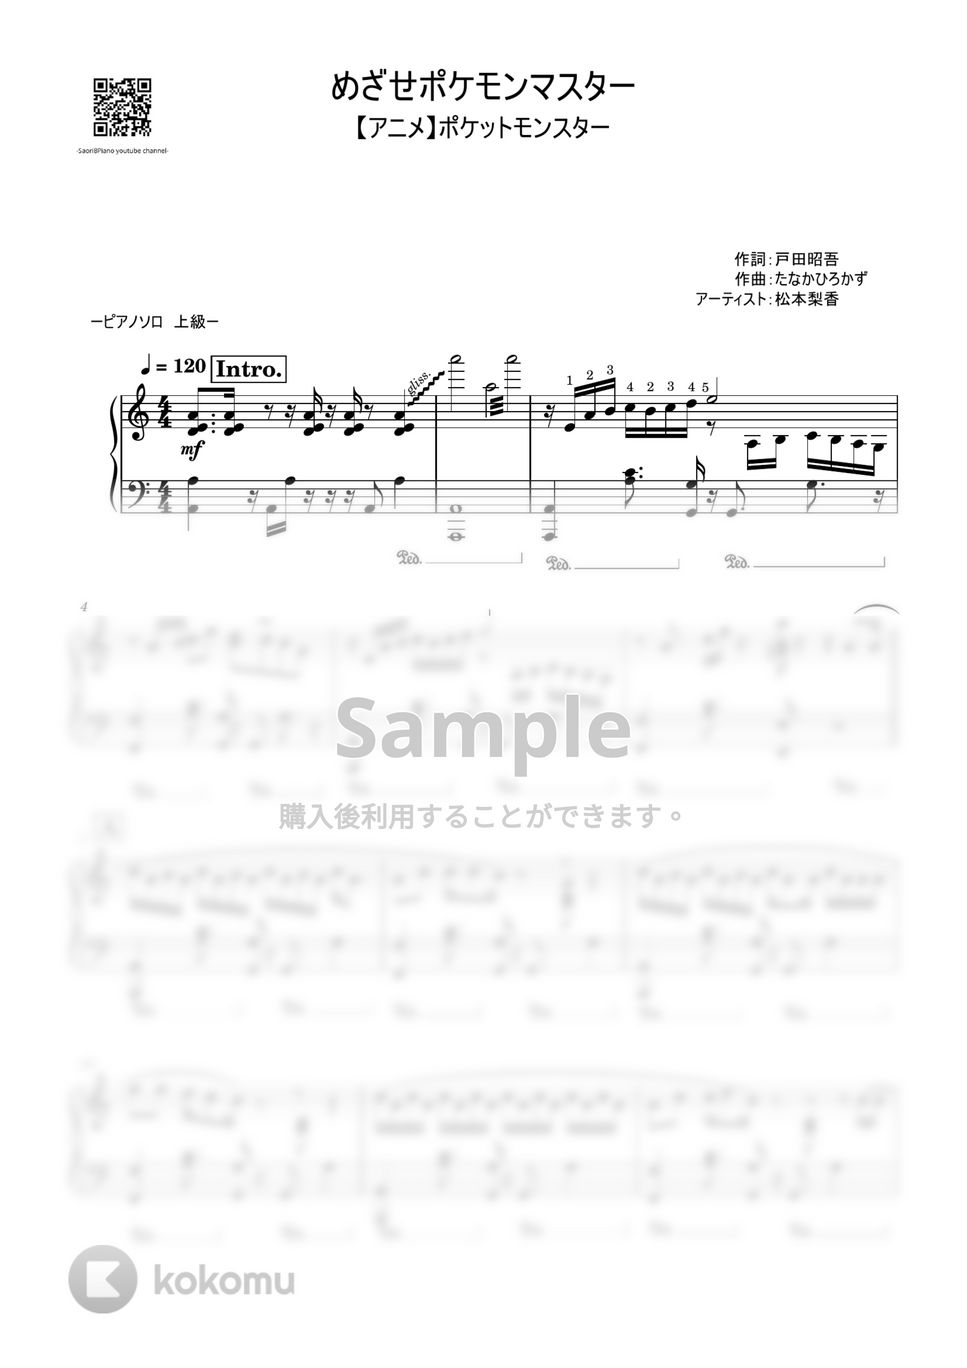 松本梨香 - めざせポケモンマスター (上級レベル) by Saori8Piano